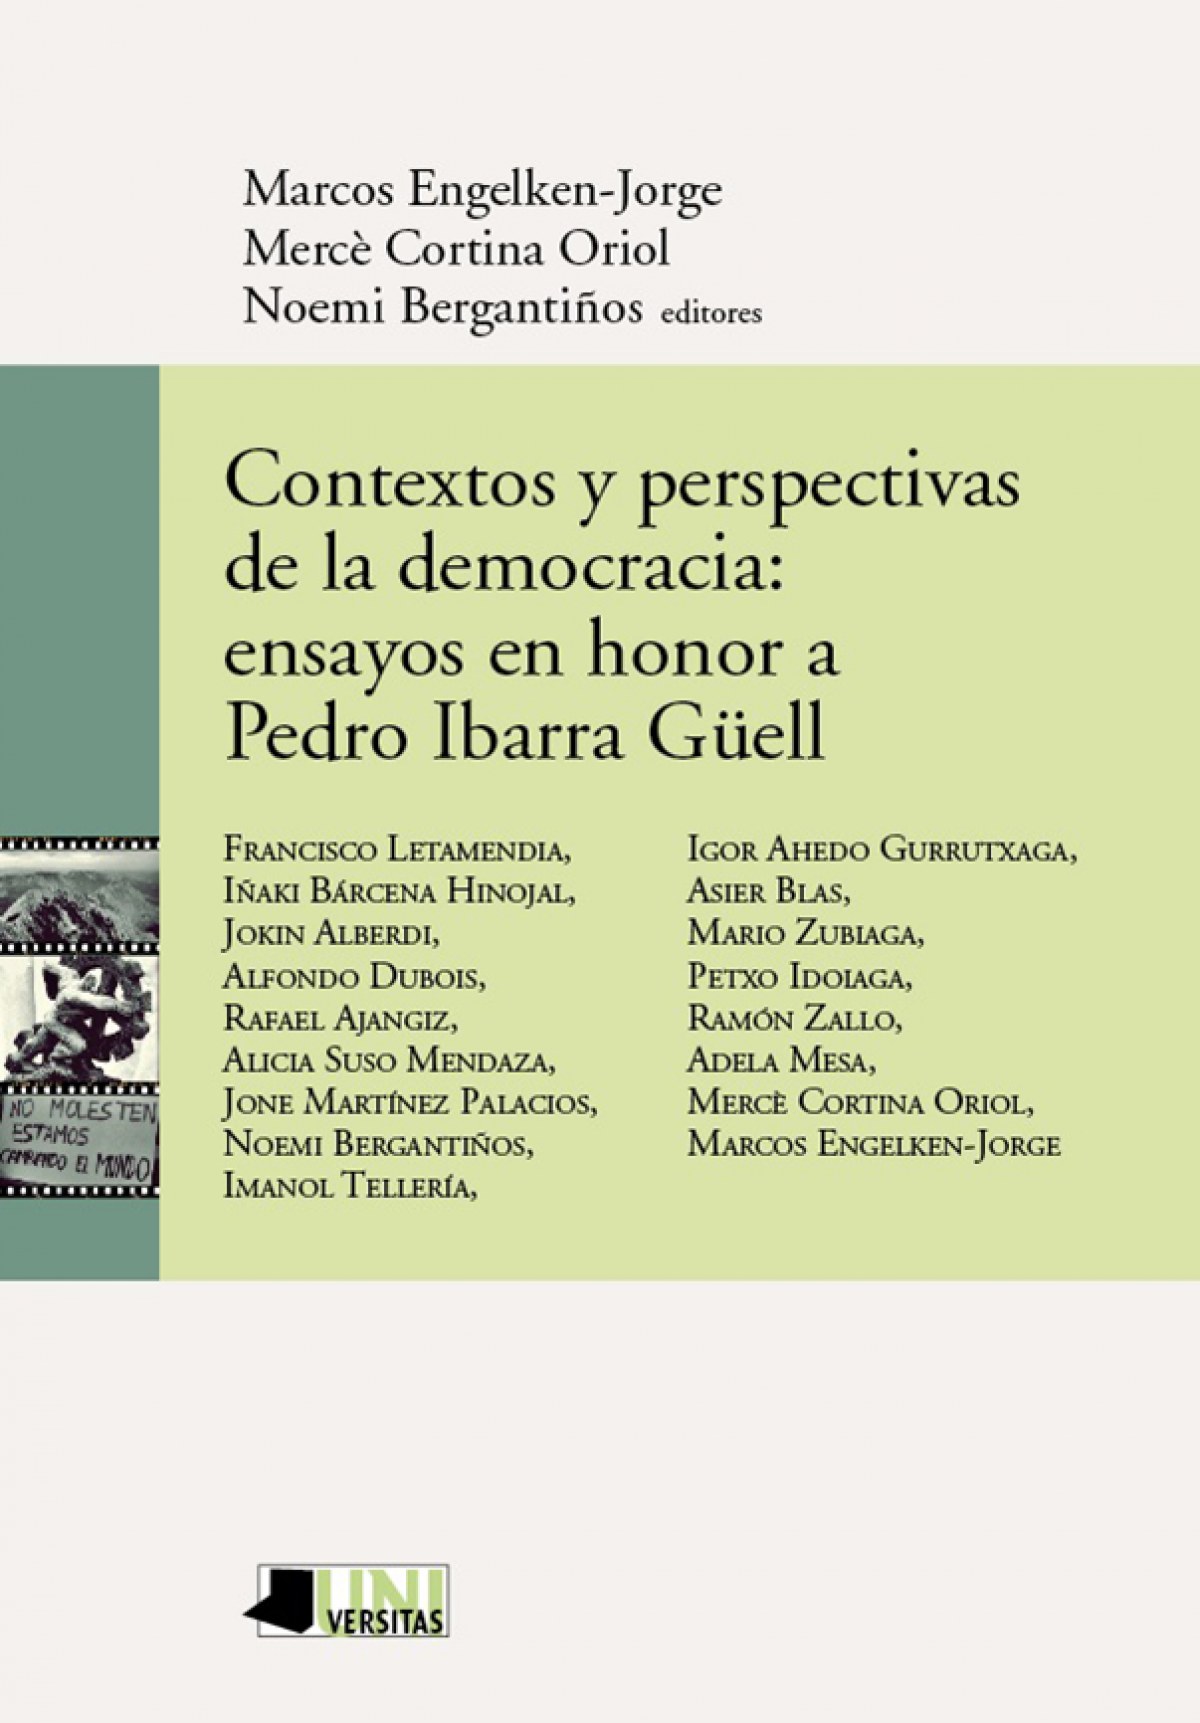 Contextos y perspectivas democracia: ensayos en honor - Vv.Aa.